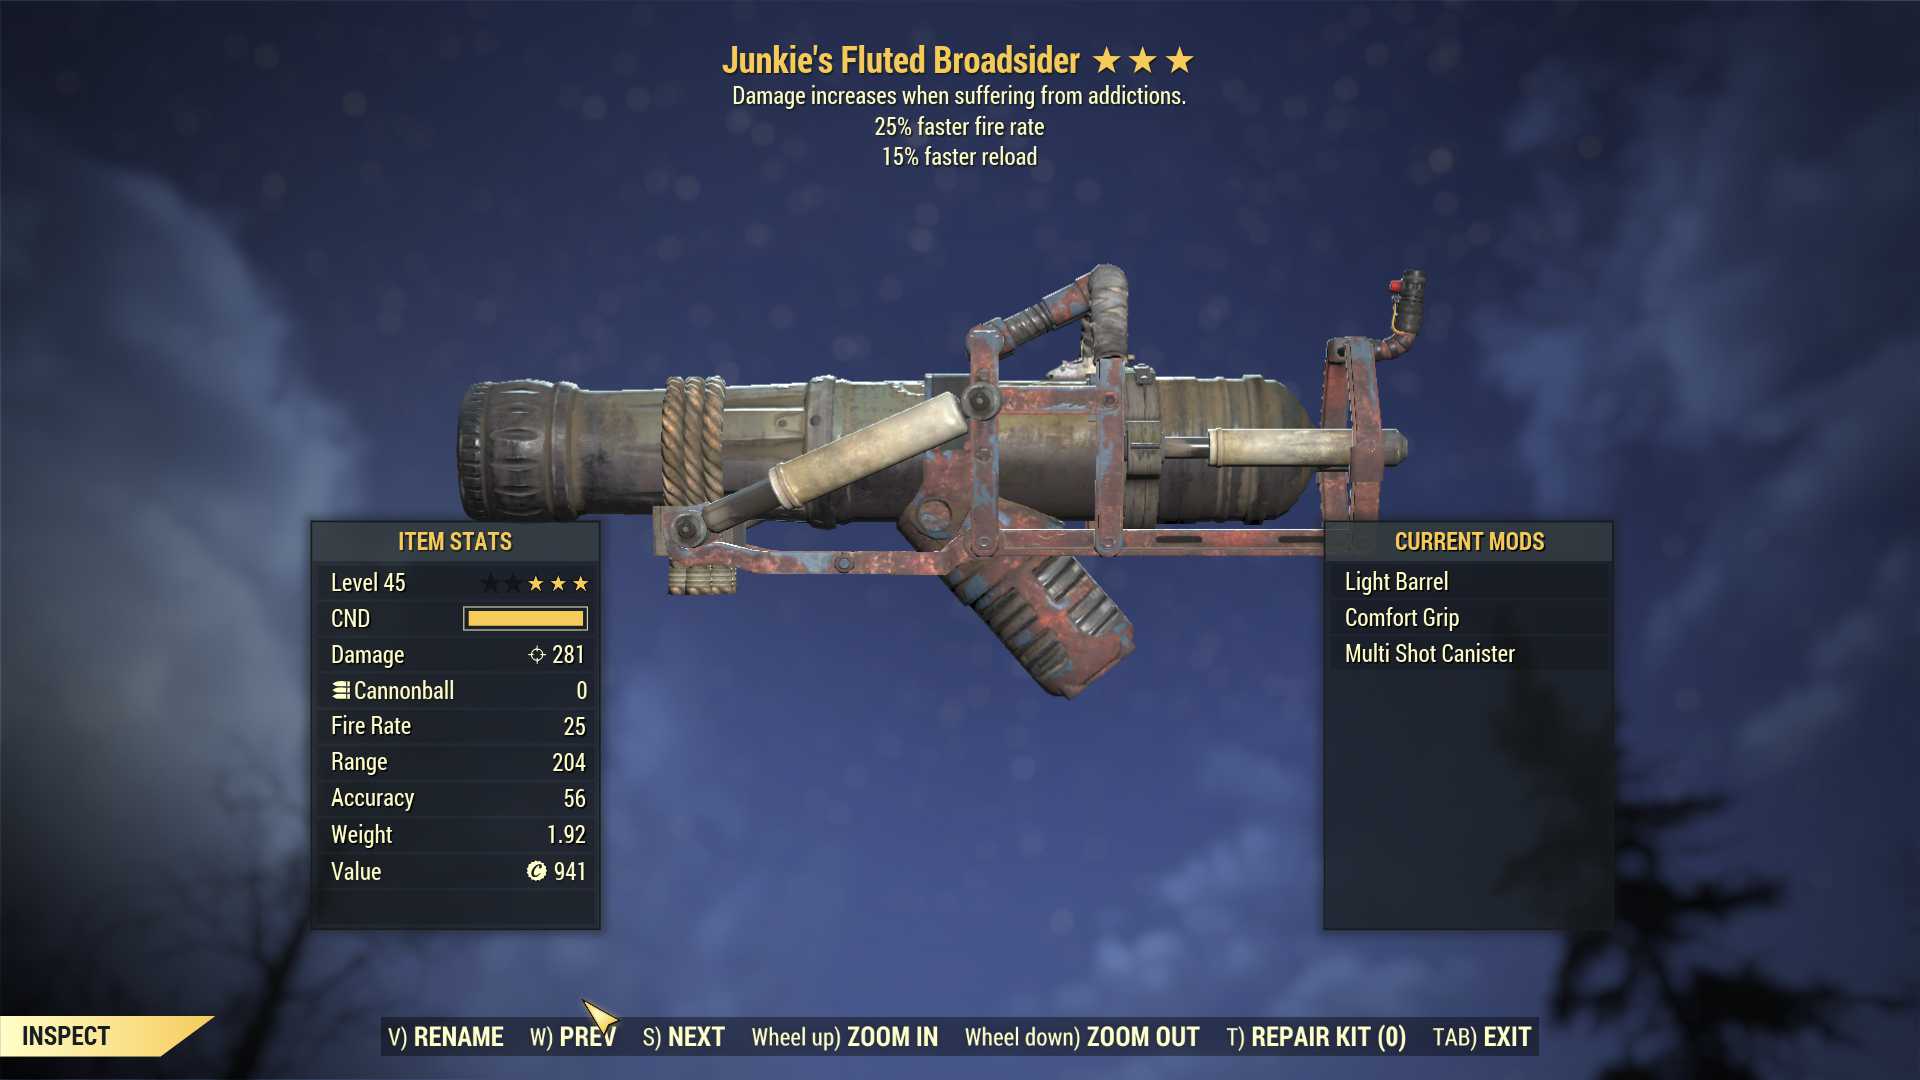 Junkie's Broadsider (25% faster fire rate, 15% faster reload)